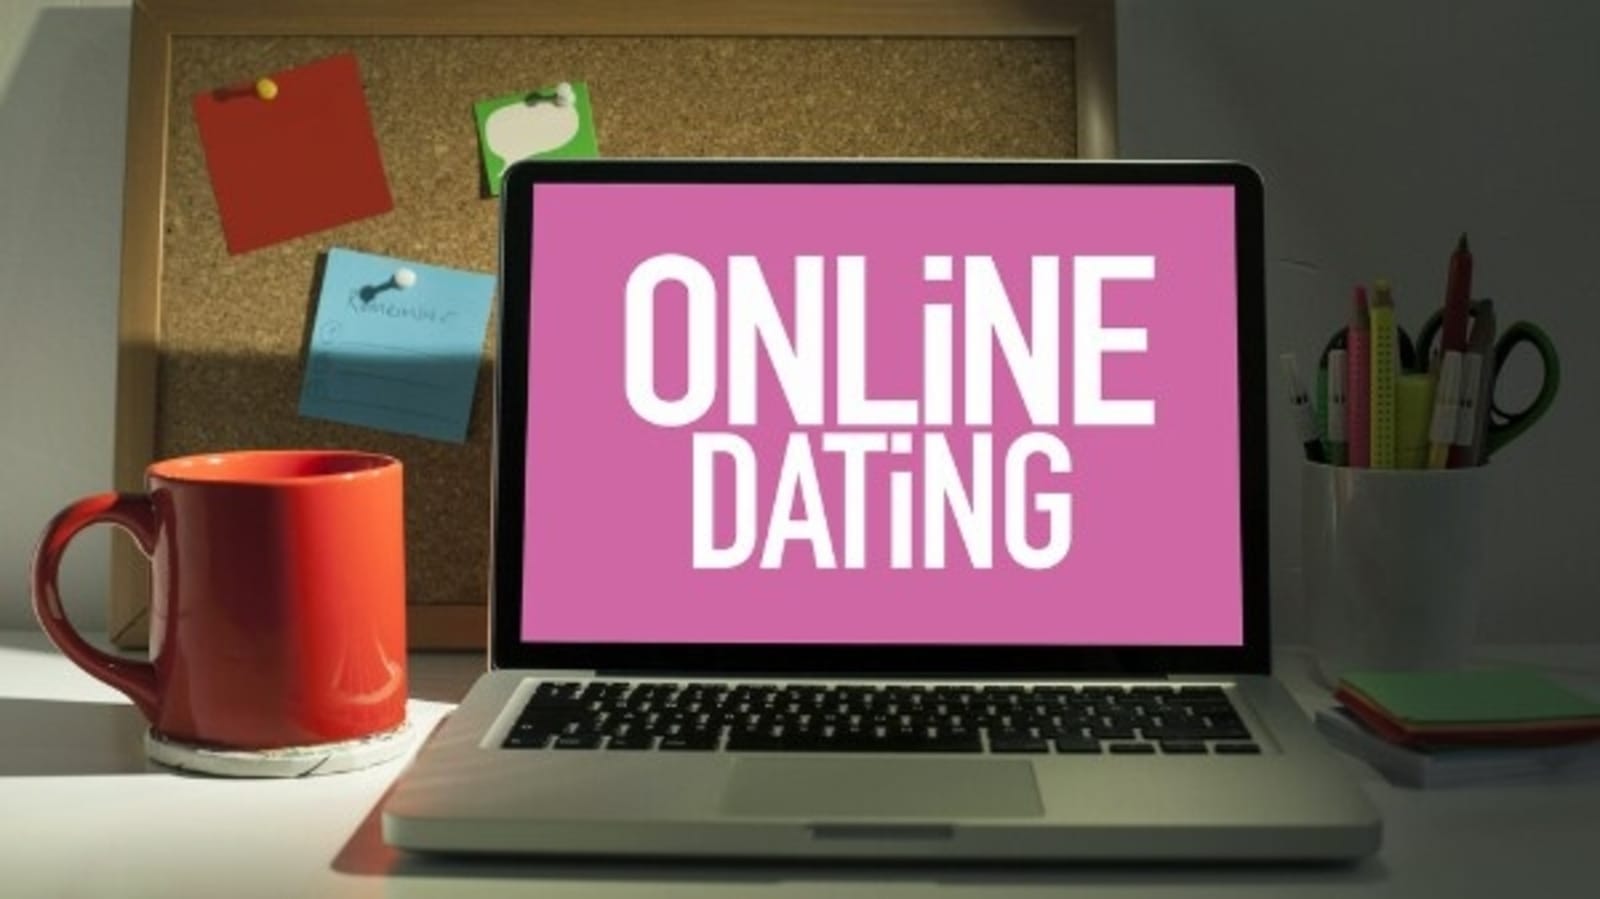 advice for online dating sites reddit